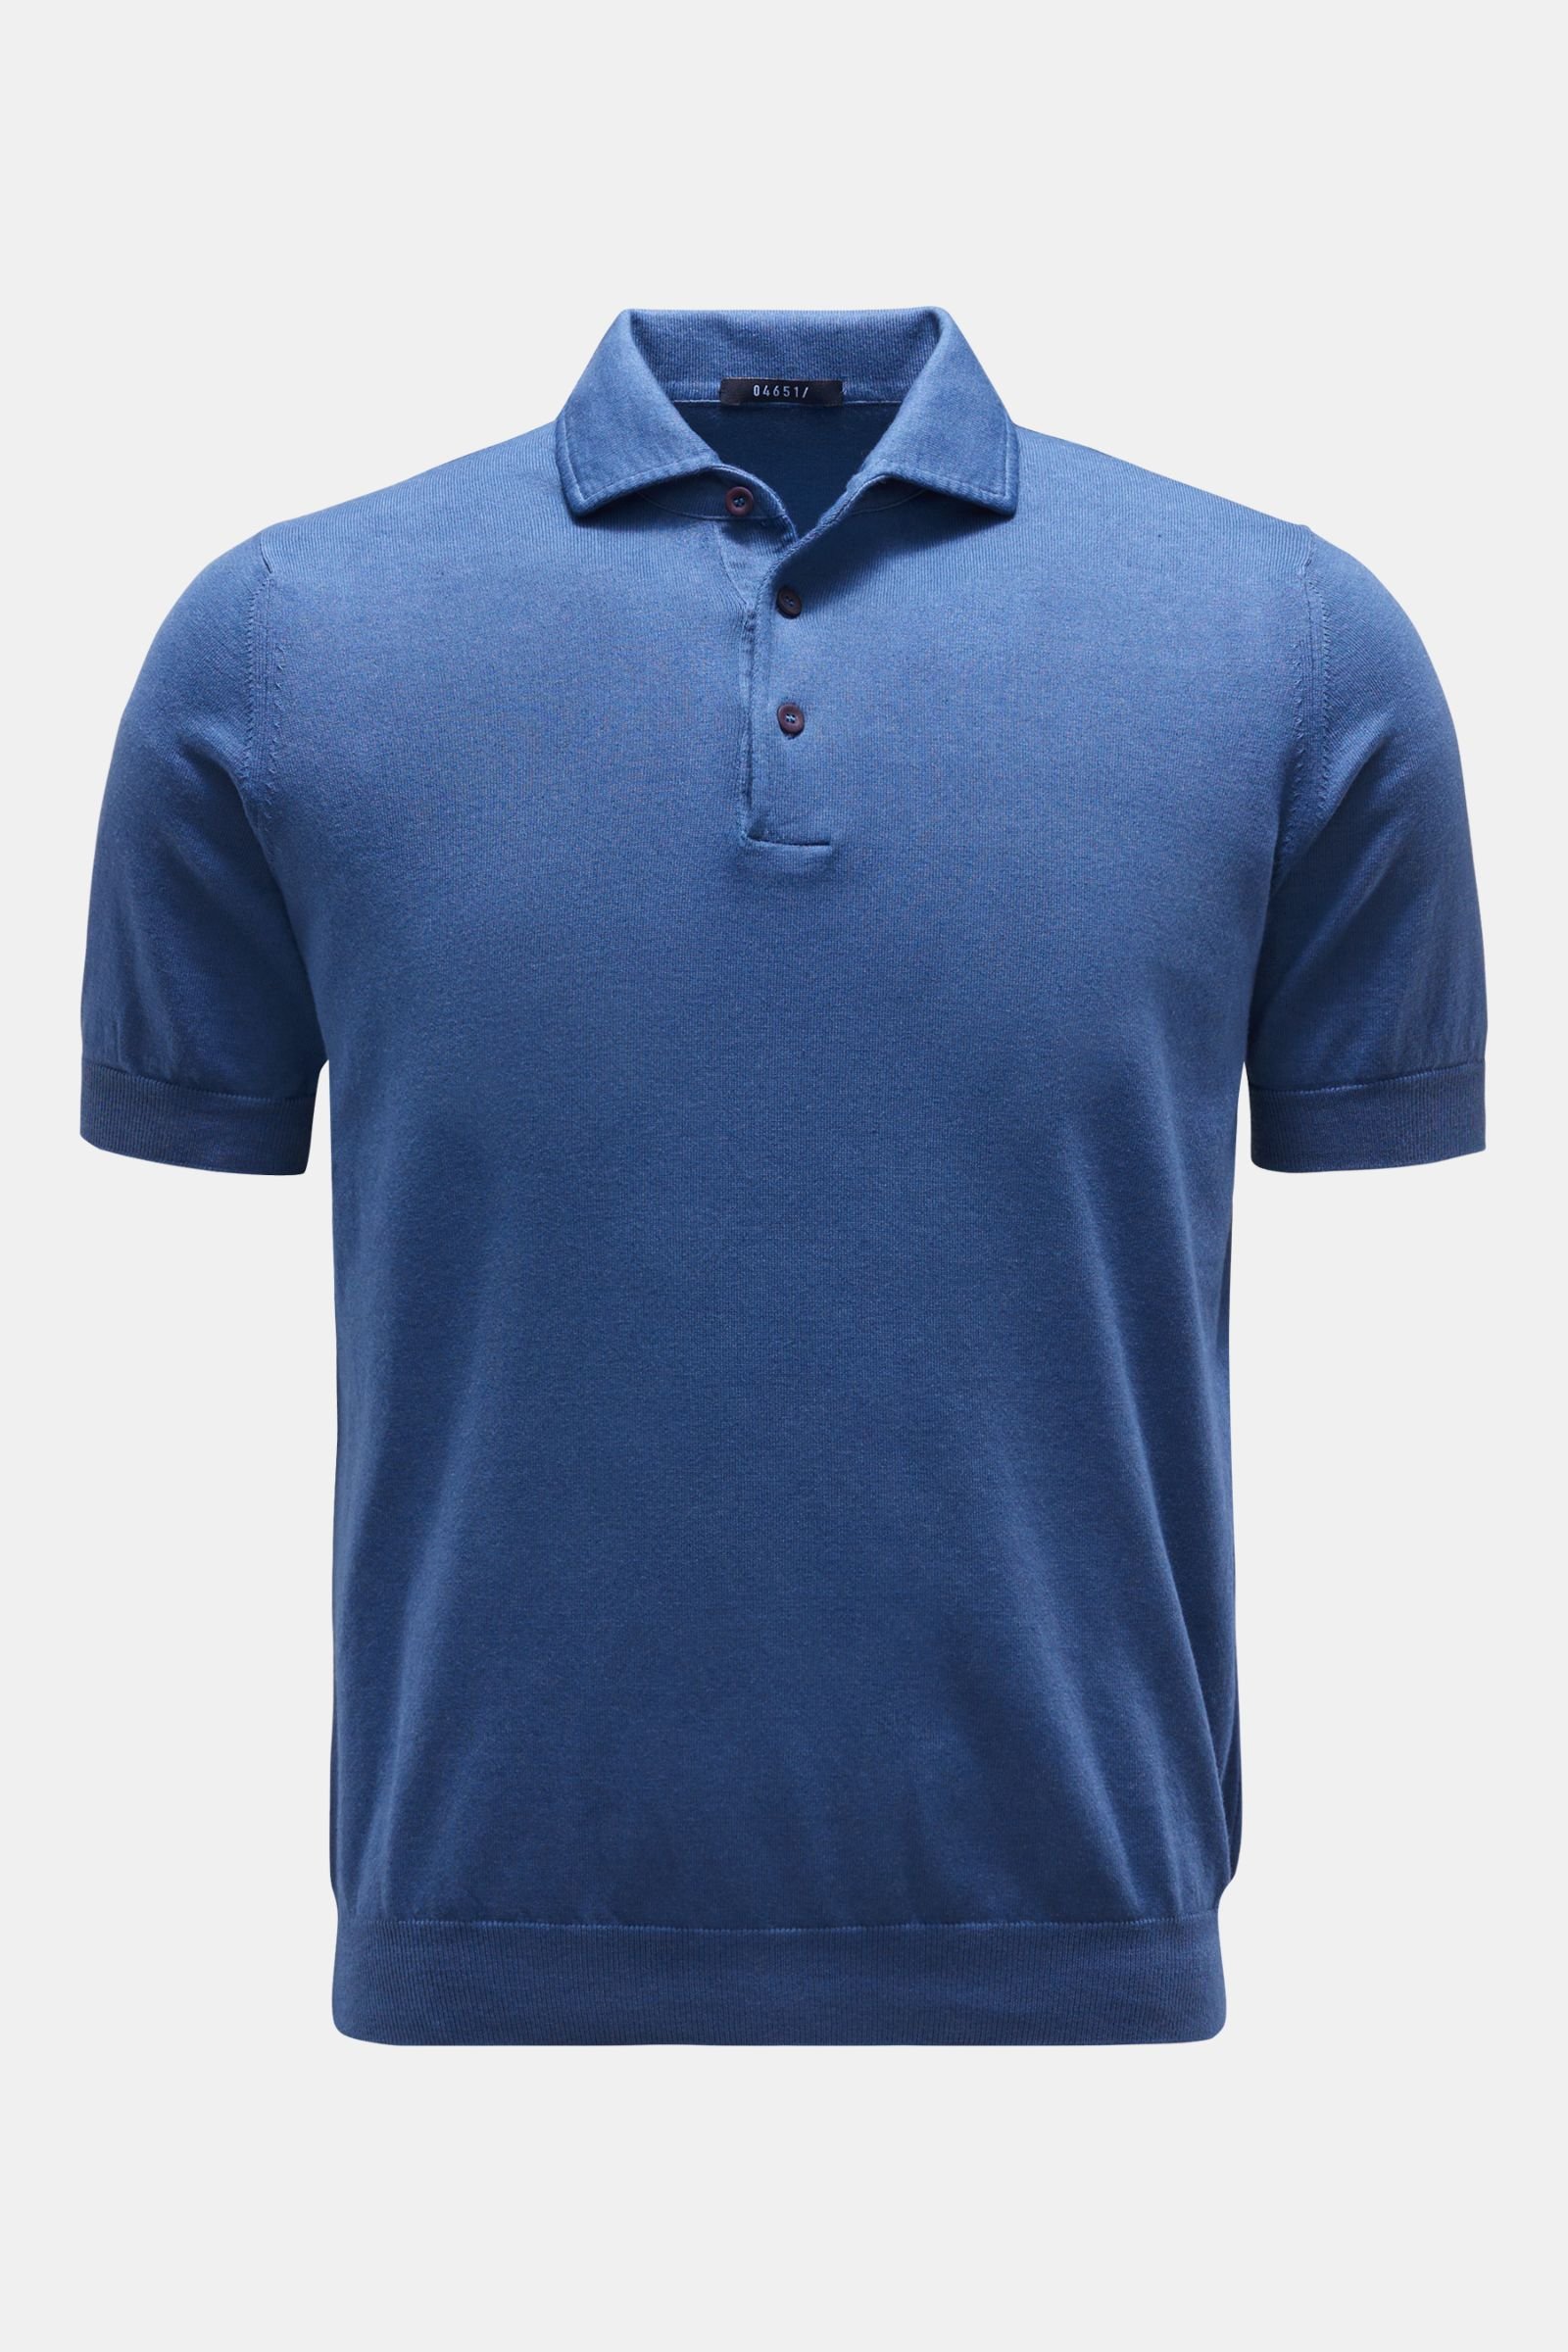 Short sleeve knit polo 'Foggy Polo' dark blue